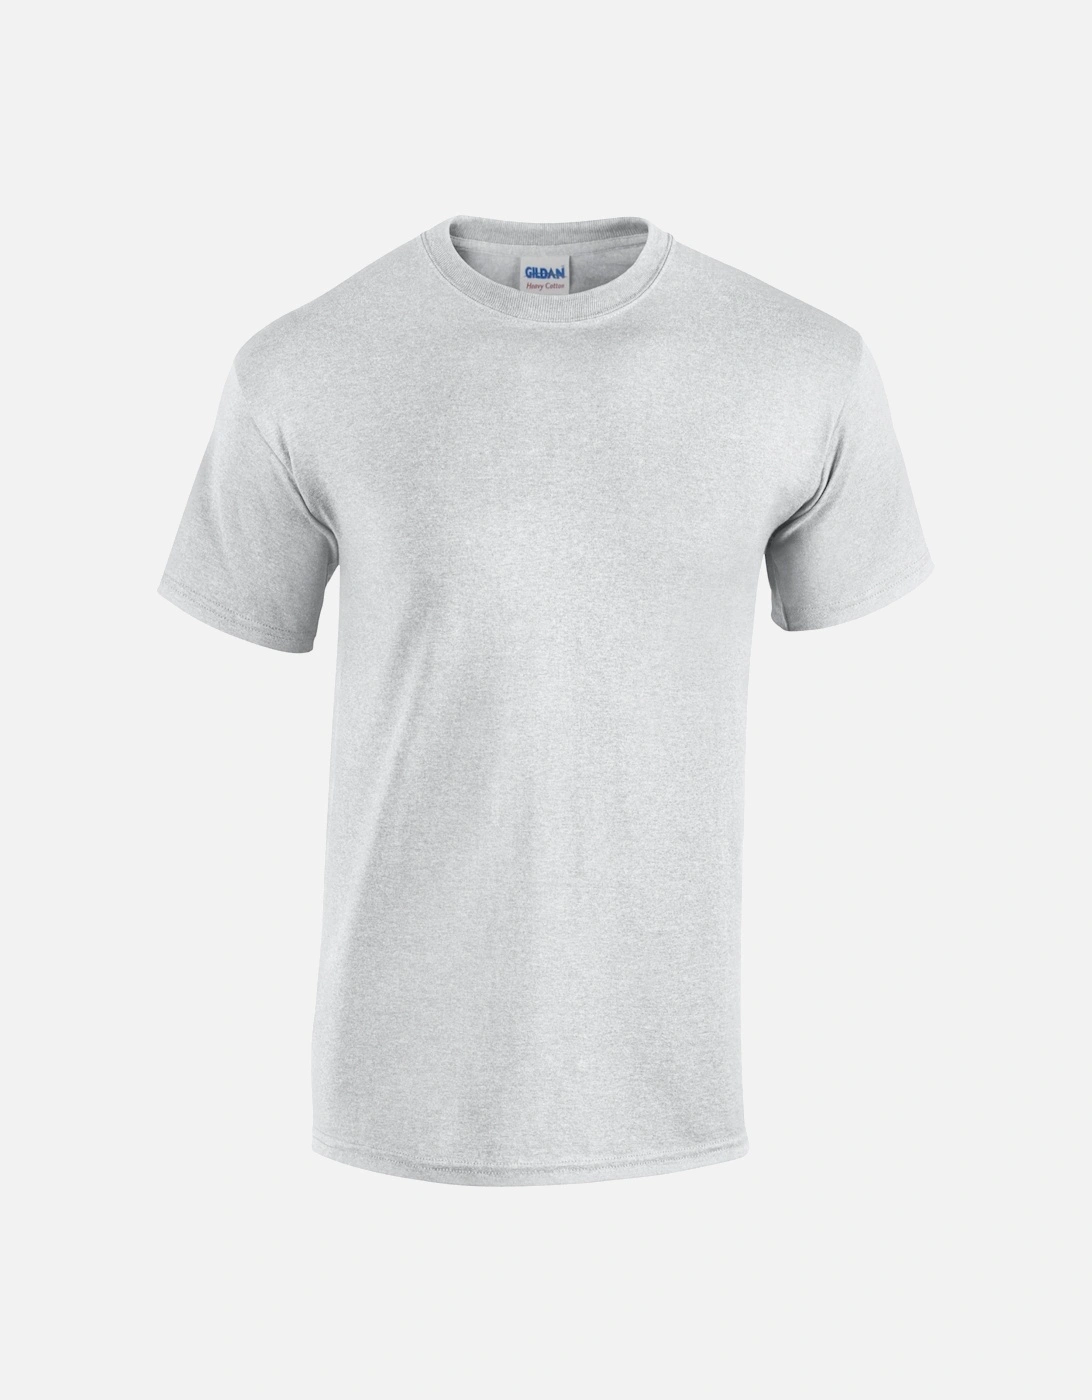 Unisex Adult Plain Cotton Heavy T-Shirt, 6 of 5